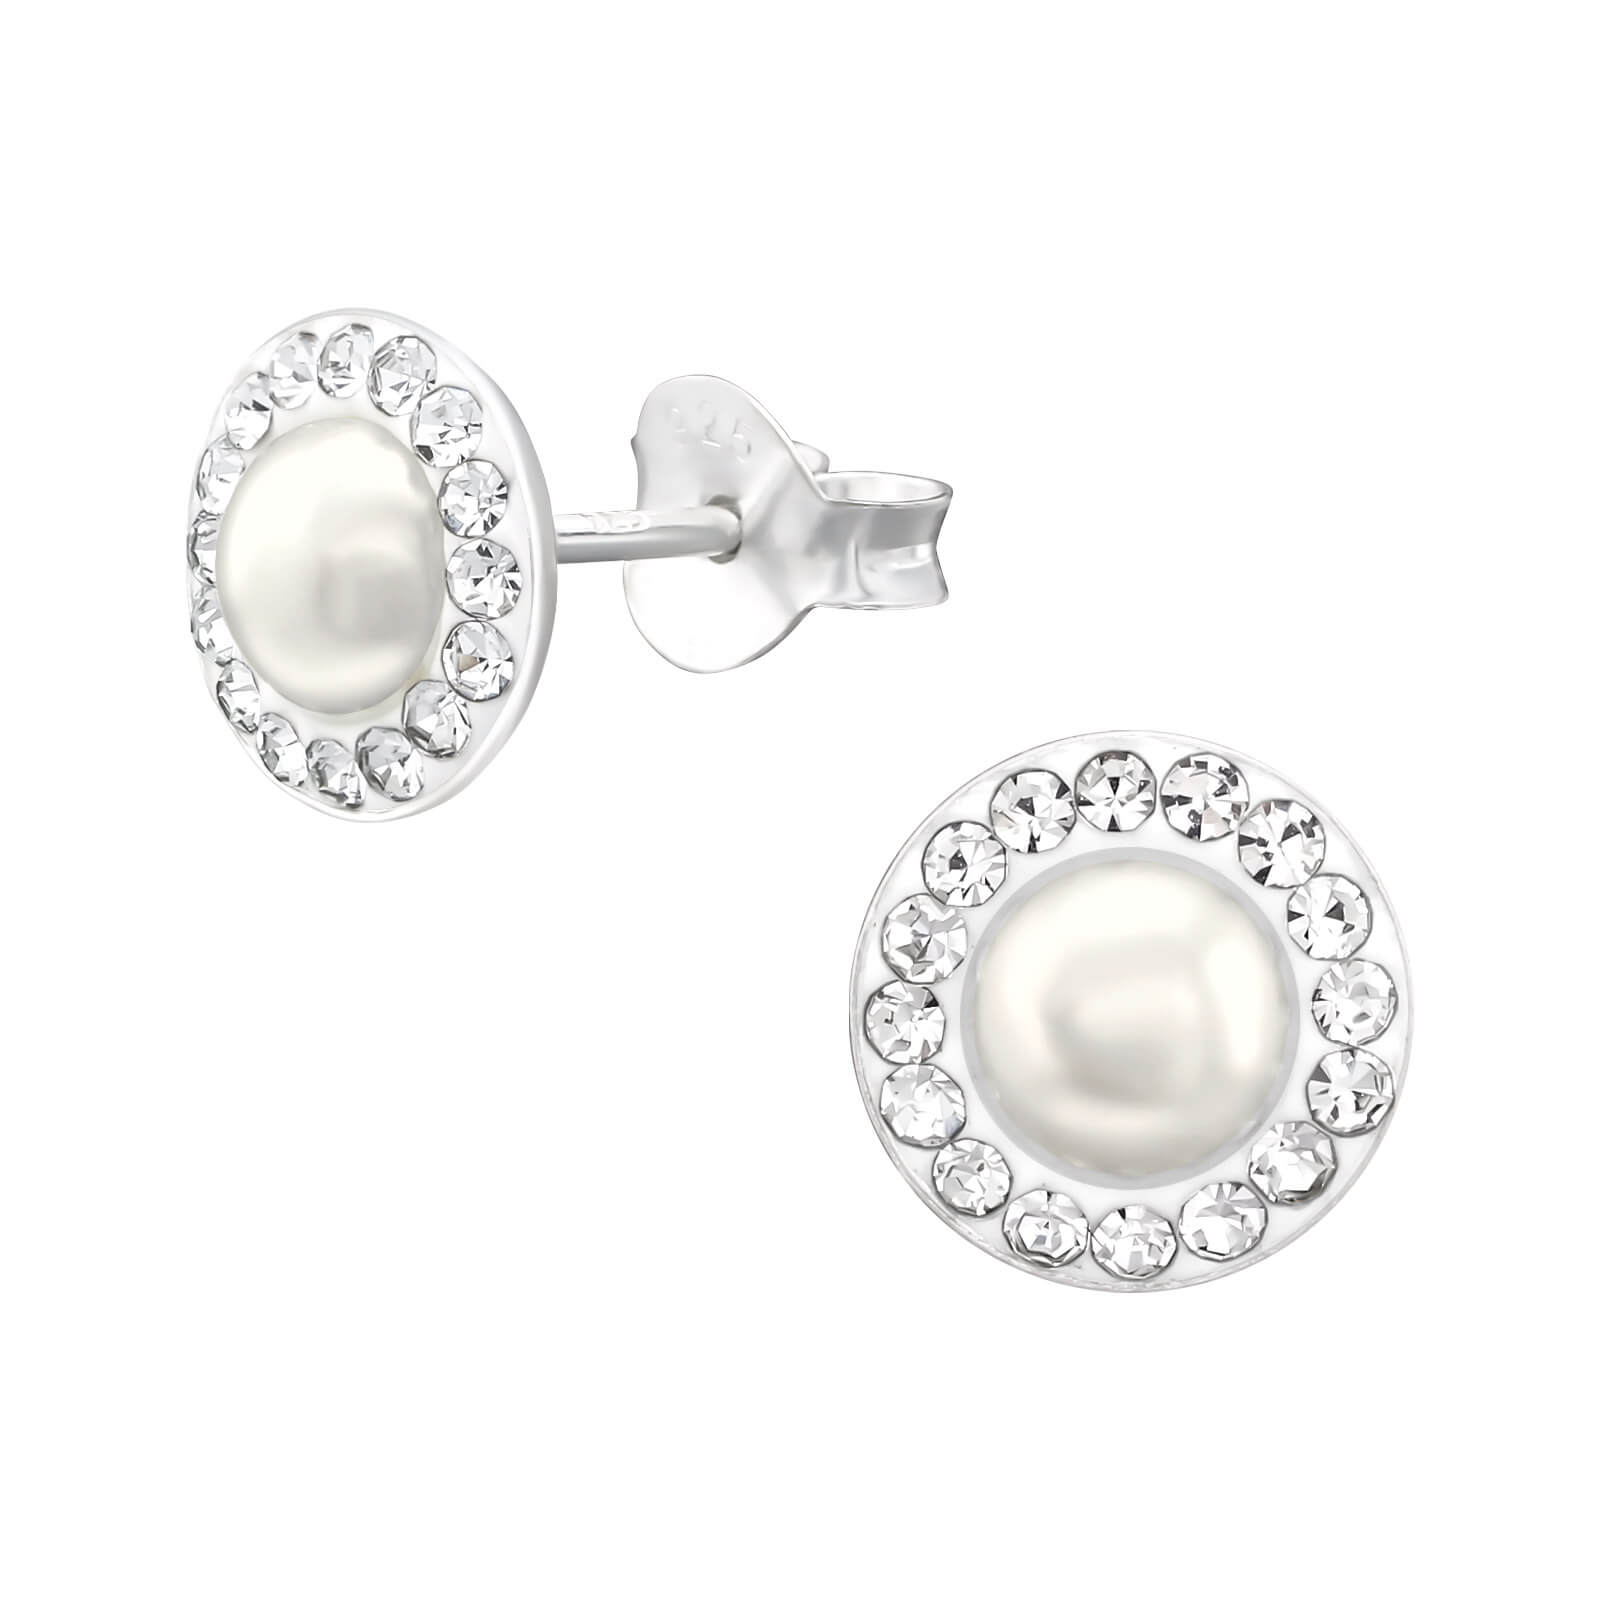 Cercei din argint 925 rotunzi cu perle albe sintetice si pietre zirconiu alb Brilliant